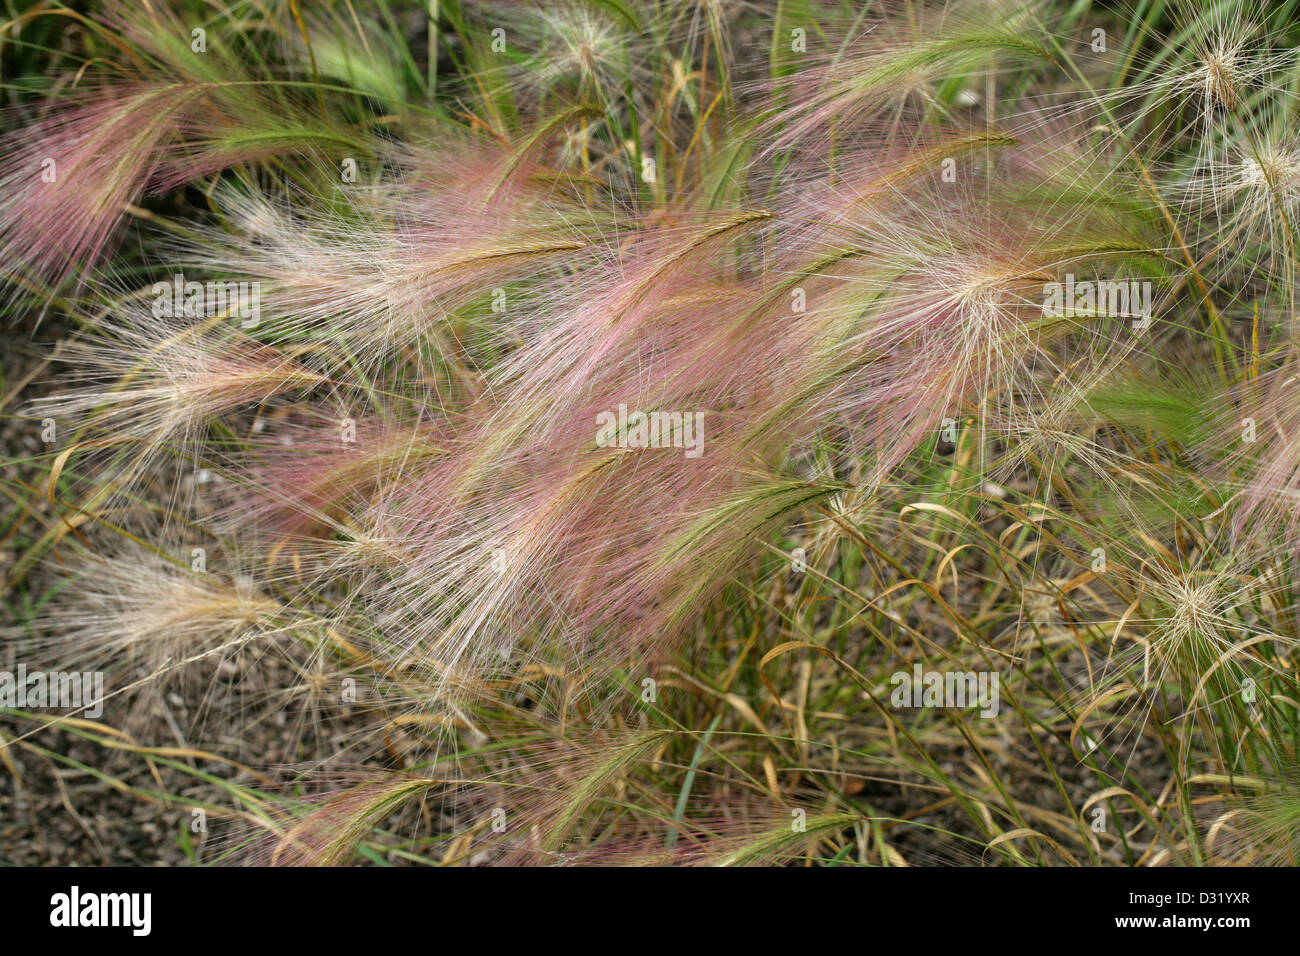 Fuchsschwanz Gerste, Hordeum Jubatum, Poaceae. Nord-Amerika. Auch bekannt als Eichhörnchen-Tail, Eichhörnchen-Tail Gerste, Eichhörnchen-Tail Grass. Stockfoto